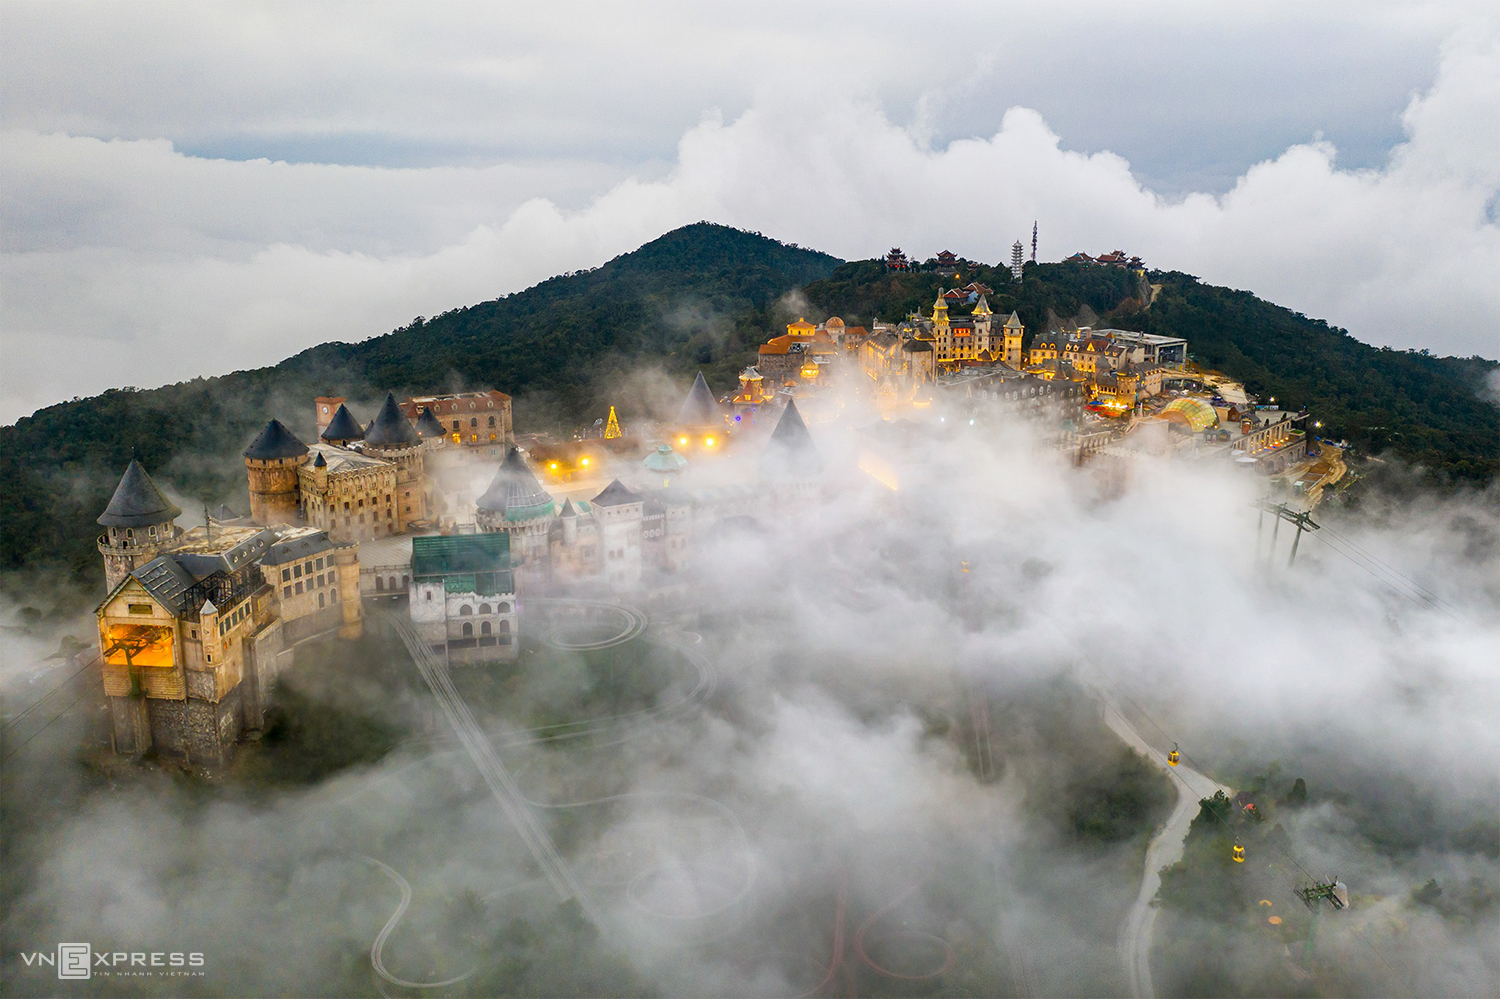 Da Nangs Tourist Attractions Swim In A Sea Of Clouds 6